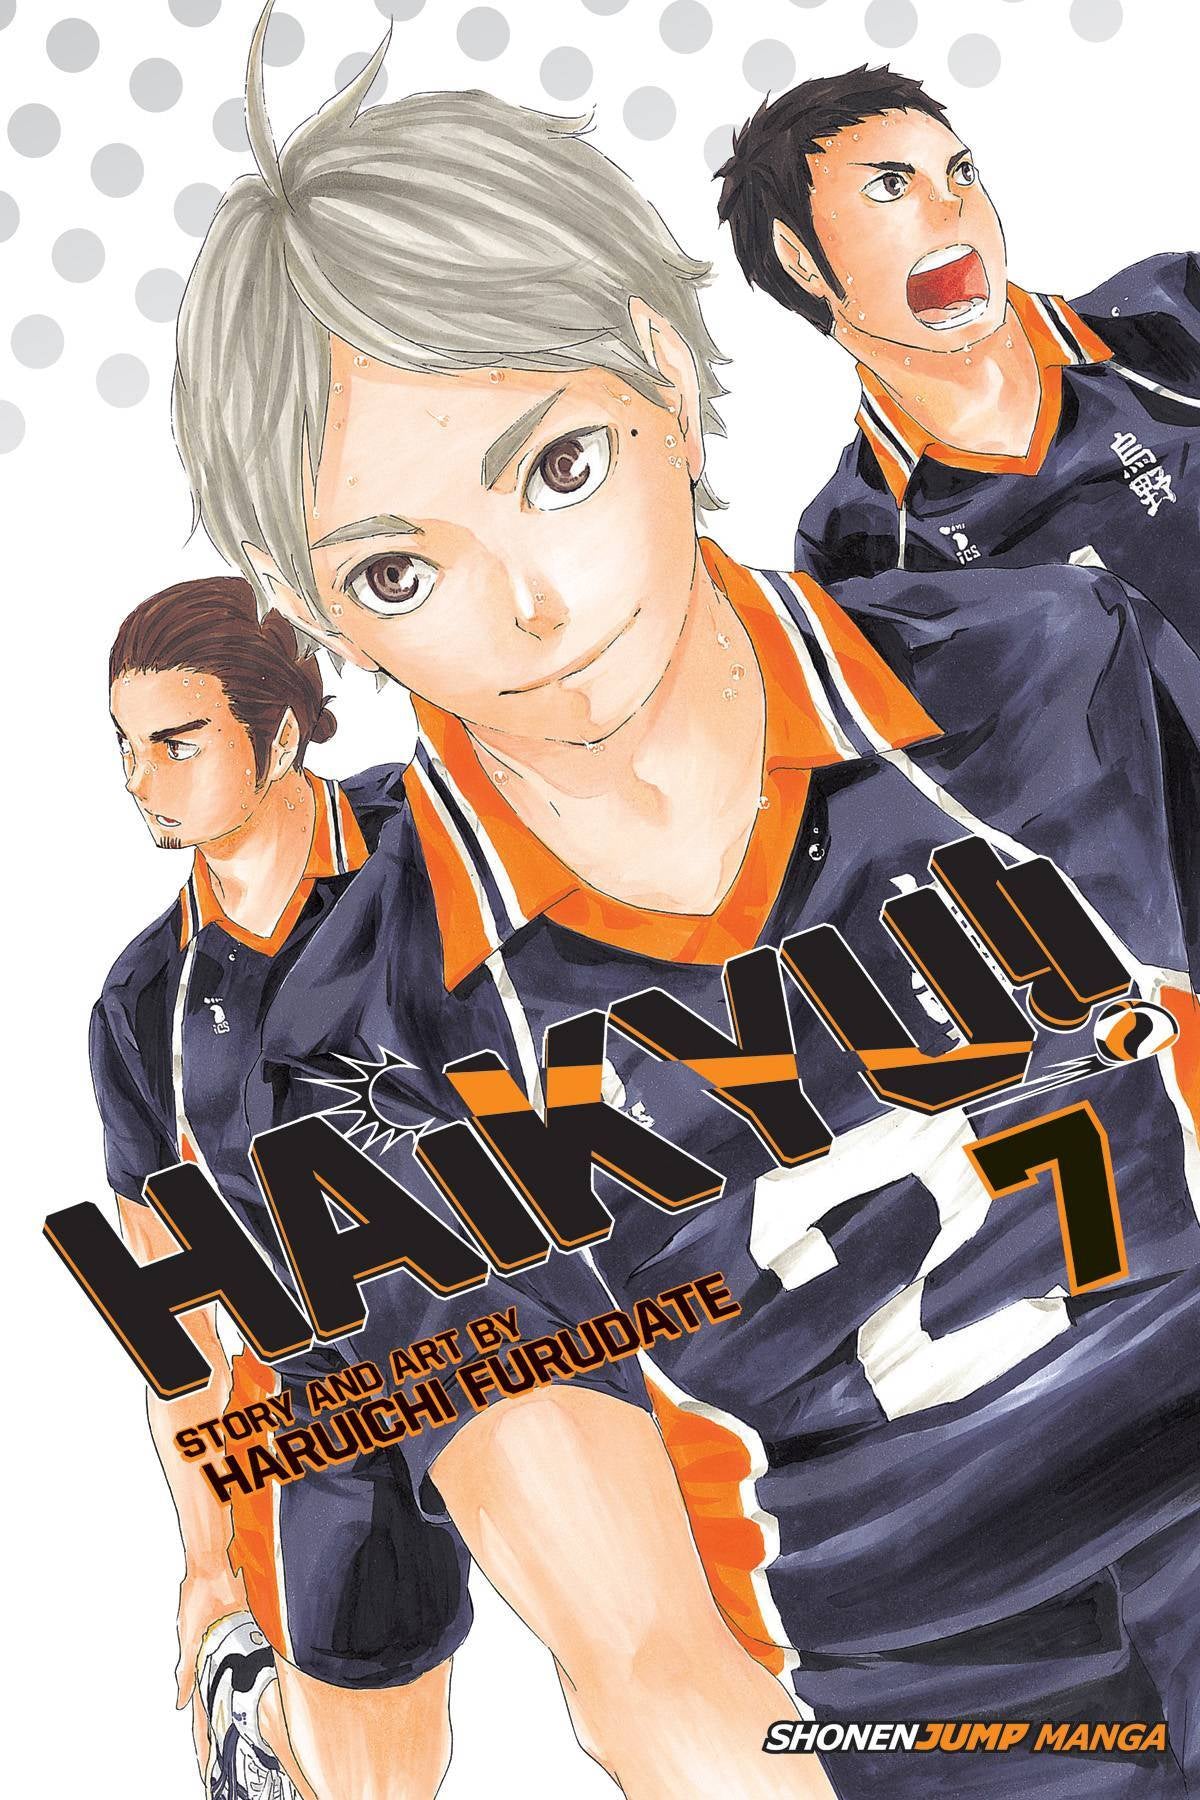 HAIKYU VOLUME 07